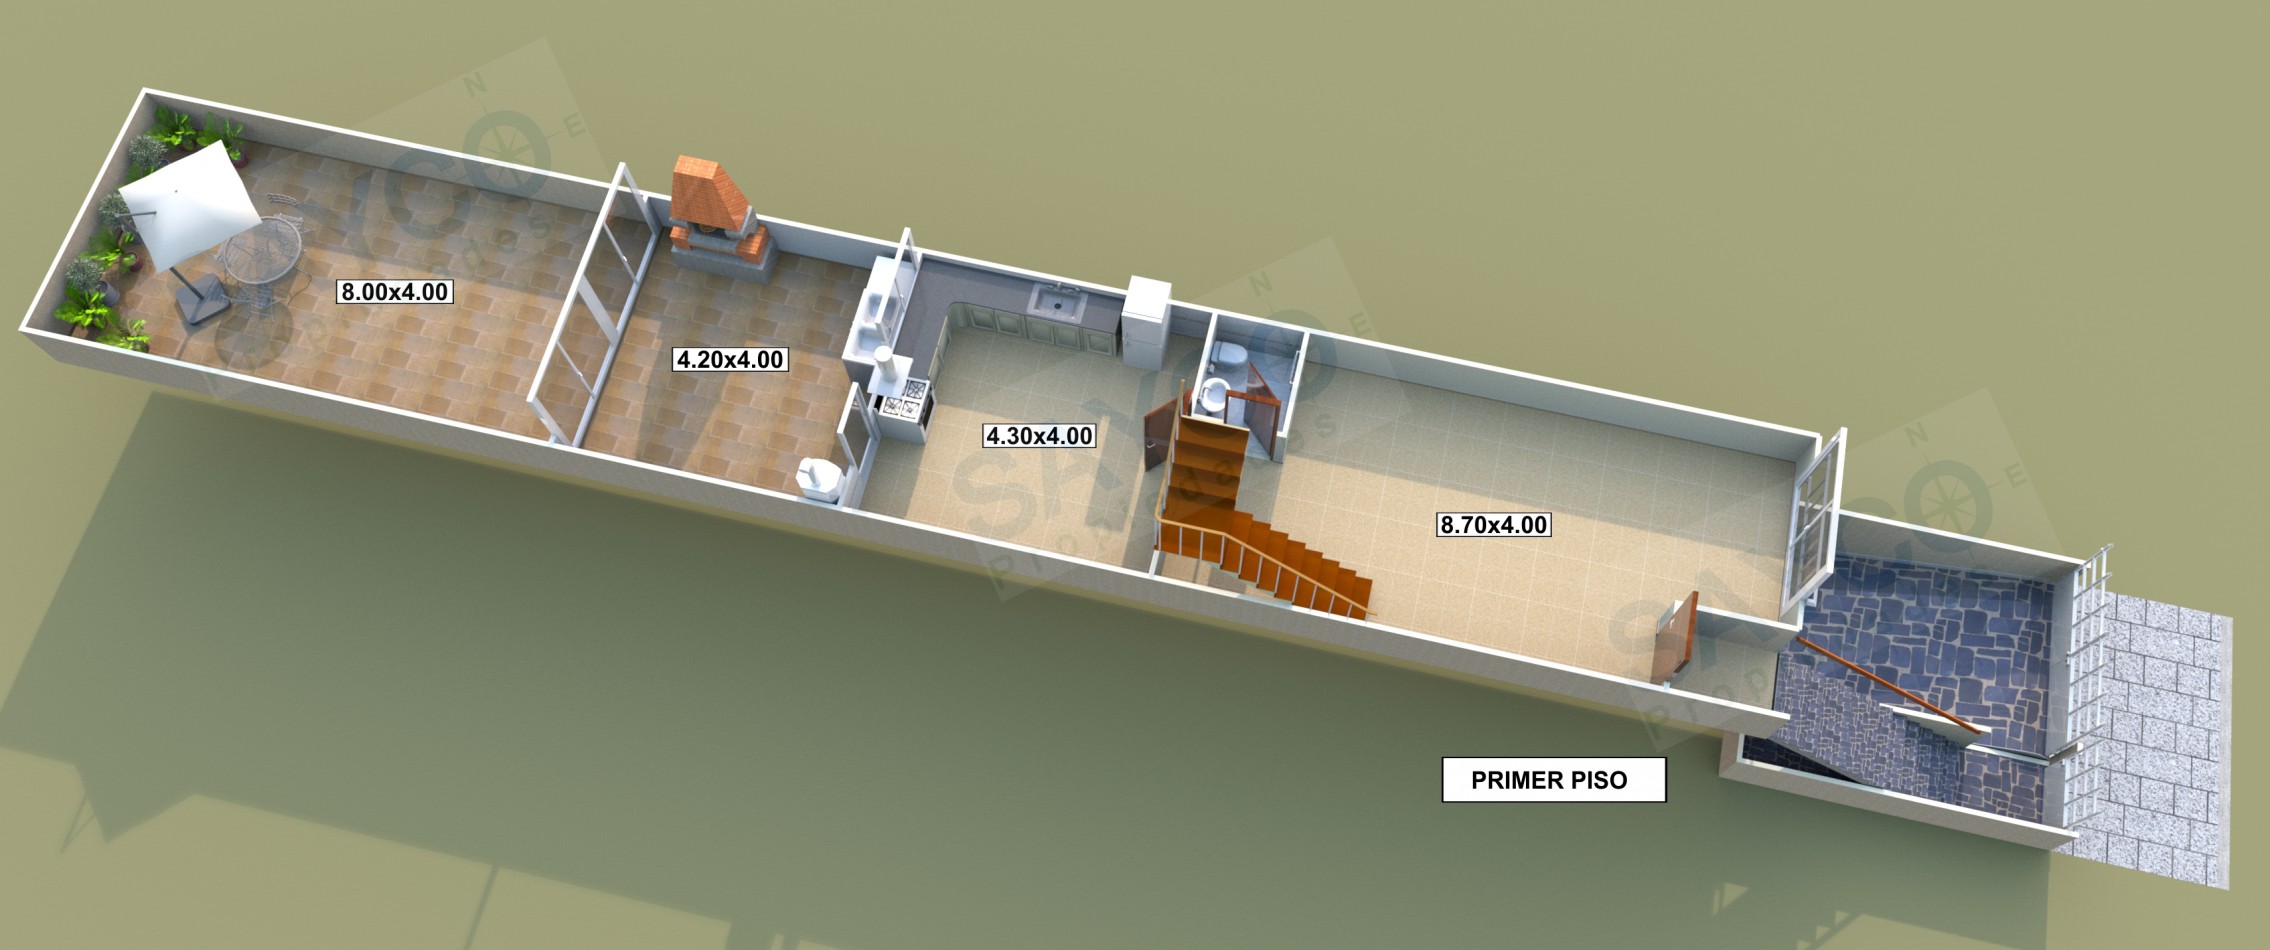 Duplex 4 Ambientes + Cochera + Fondo (4 X 12) + Parrilla + Balcon 